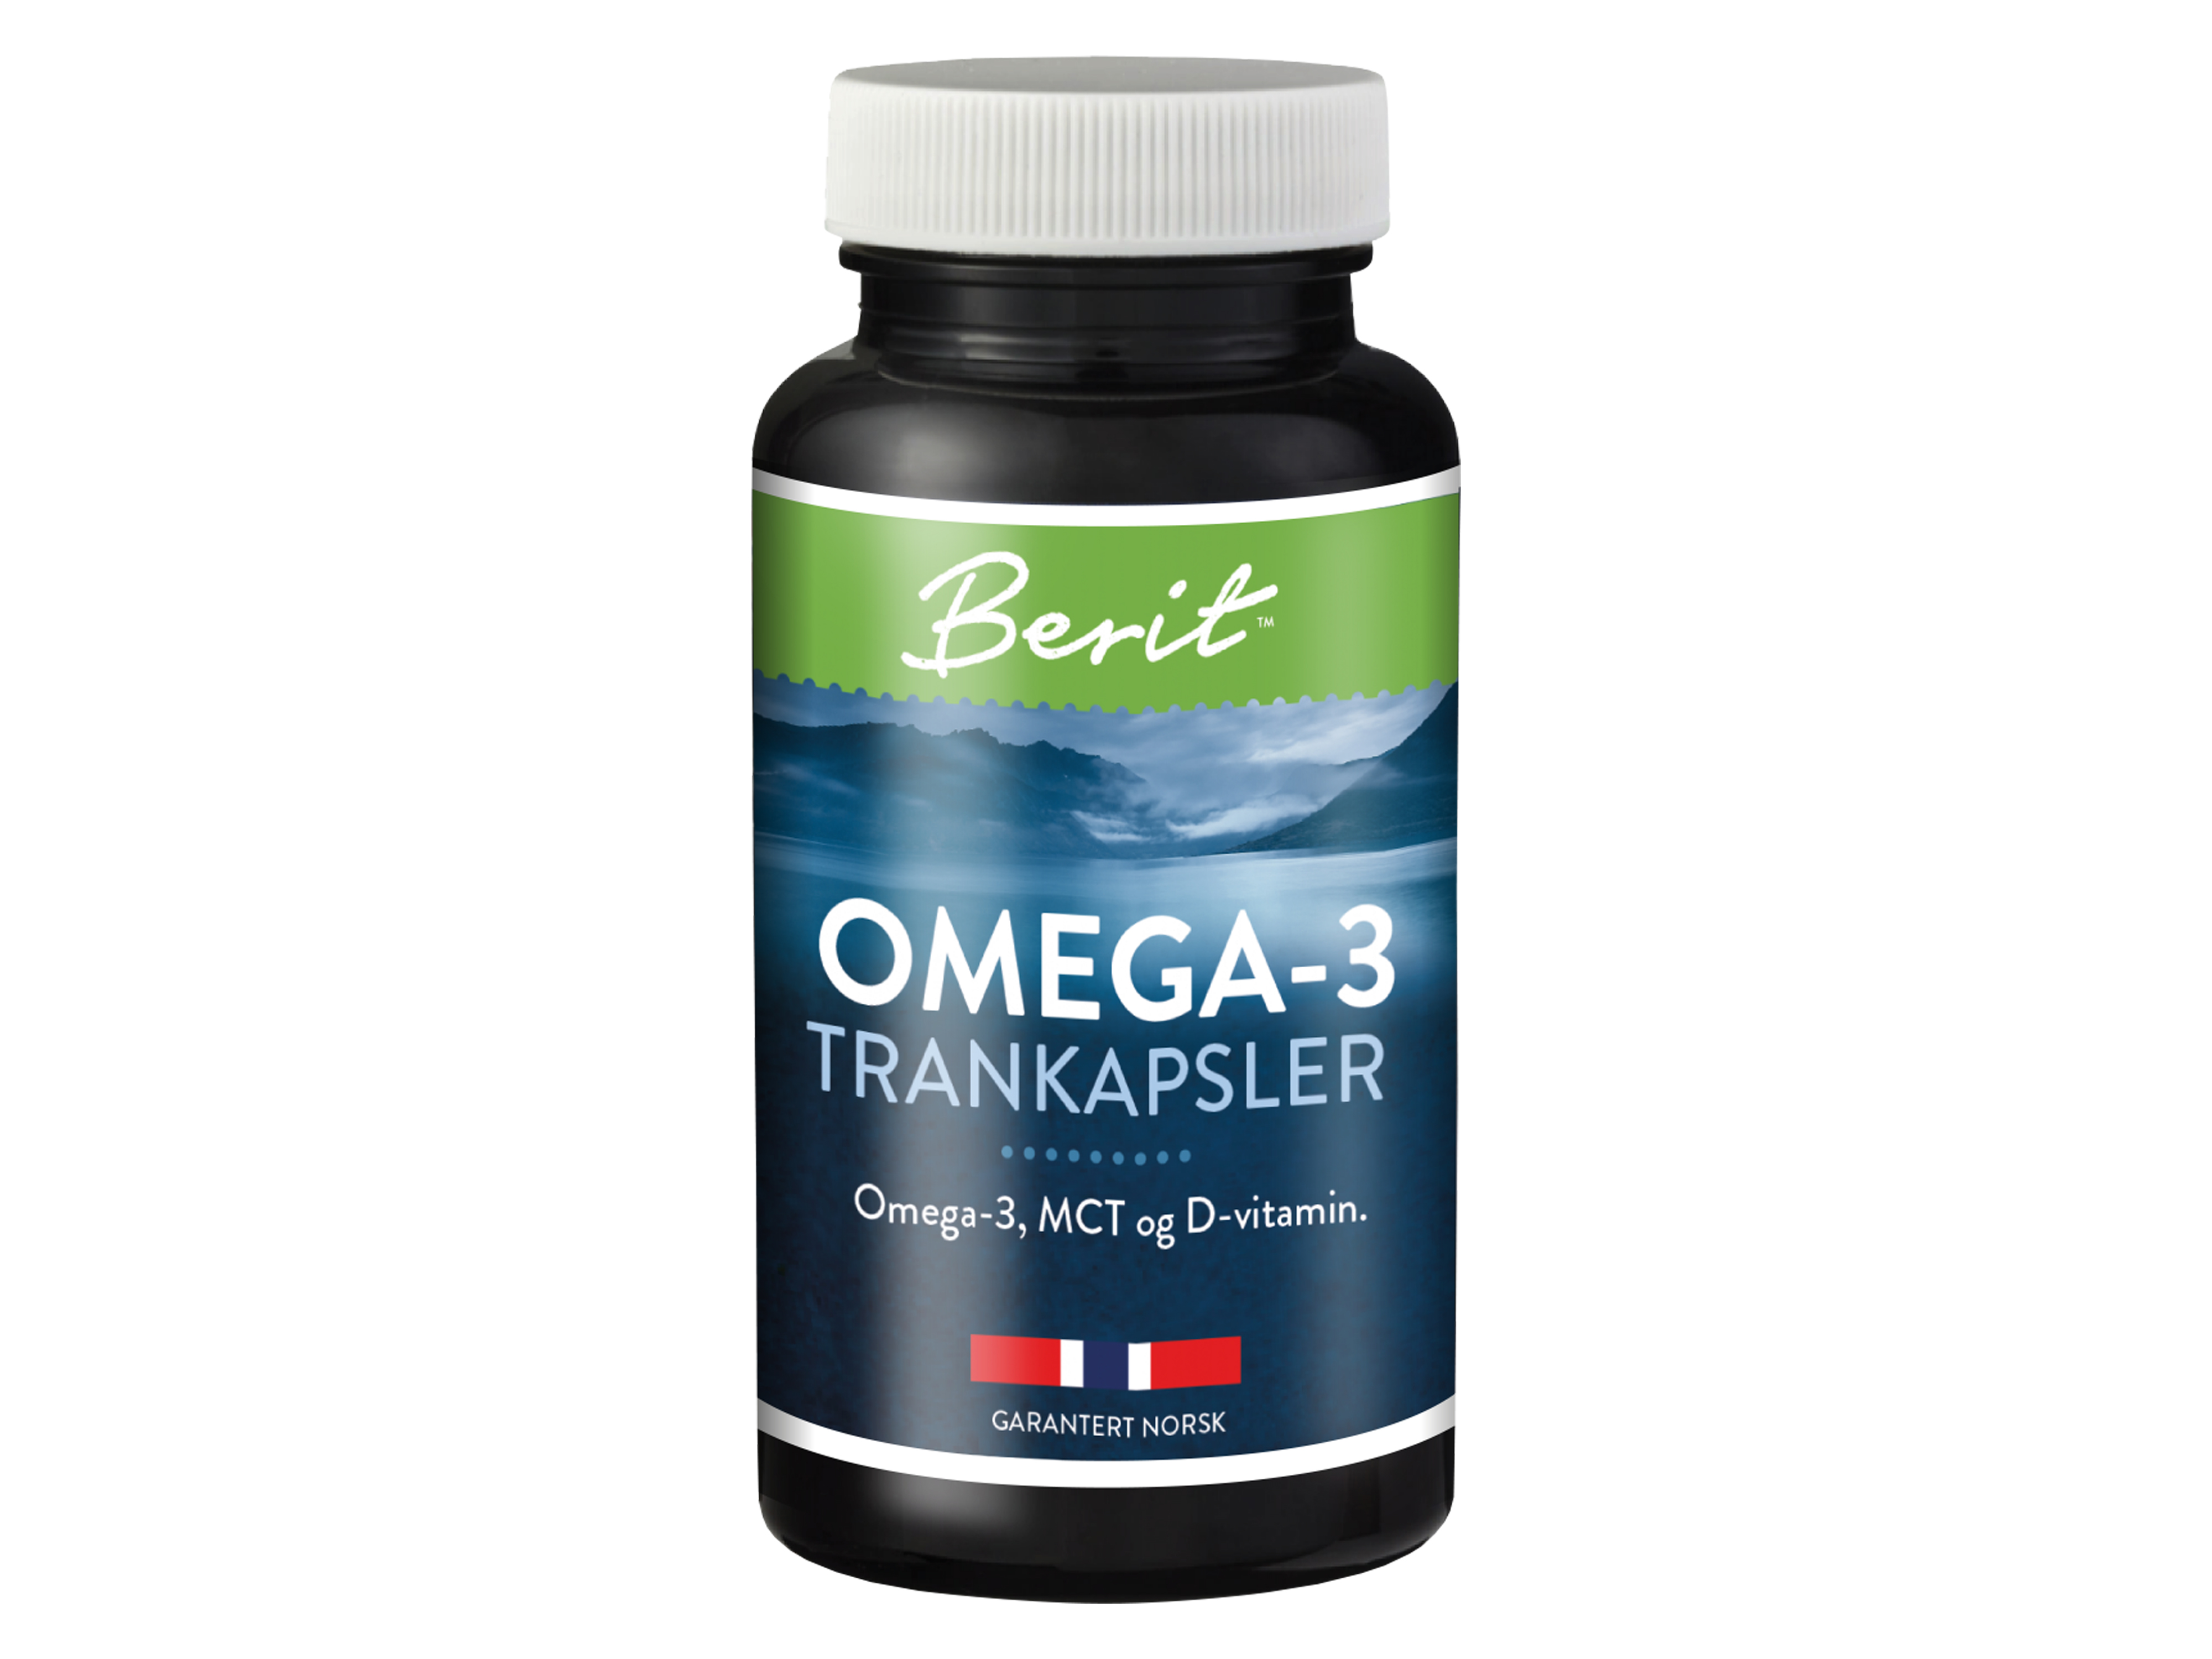 Berit N Omega-3 trankapsler med MCT og D-vitamin, 60 kapsler